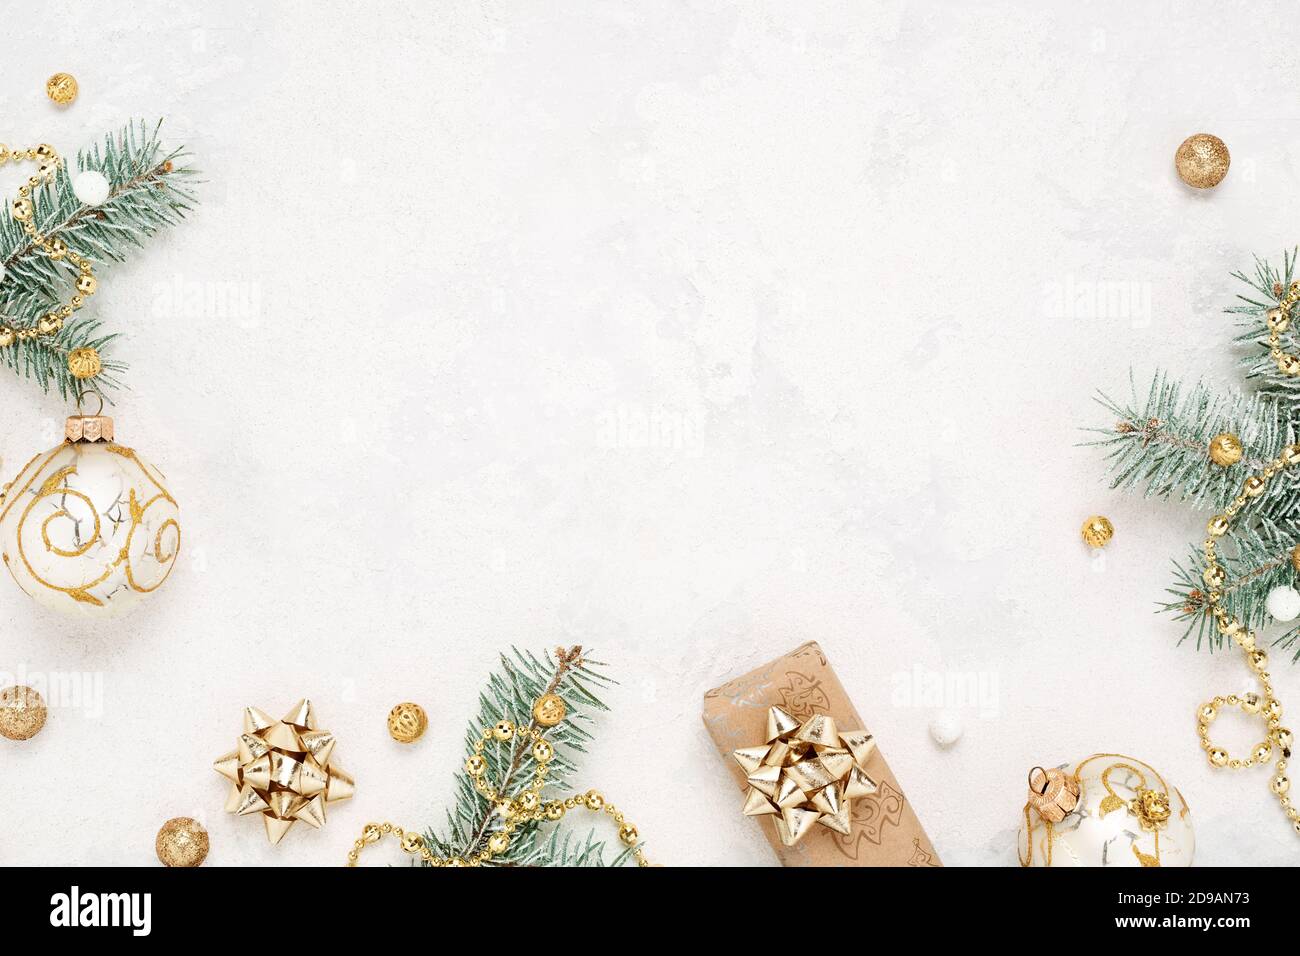 Giáng sinh đang đến gần, tại sao bạn không trang trí thiết bị của mình với một khung giáng sinh mới? Khung giáng sinh với trang trí màu xanh lá cây và vàng trên nền trắng này đem đến cho bạn cảm giác tươi mới và vui tươi của ngày lễ. Với những chi tiết trang trí tinh tế, bạn sẽ cảm thấy thật dễ chịu khi sử dụng thiết bị của mình trong dịp Giáng sinh.